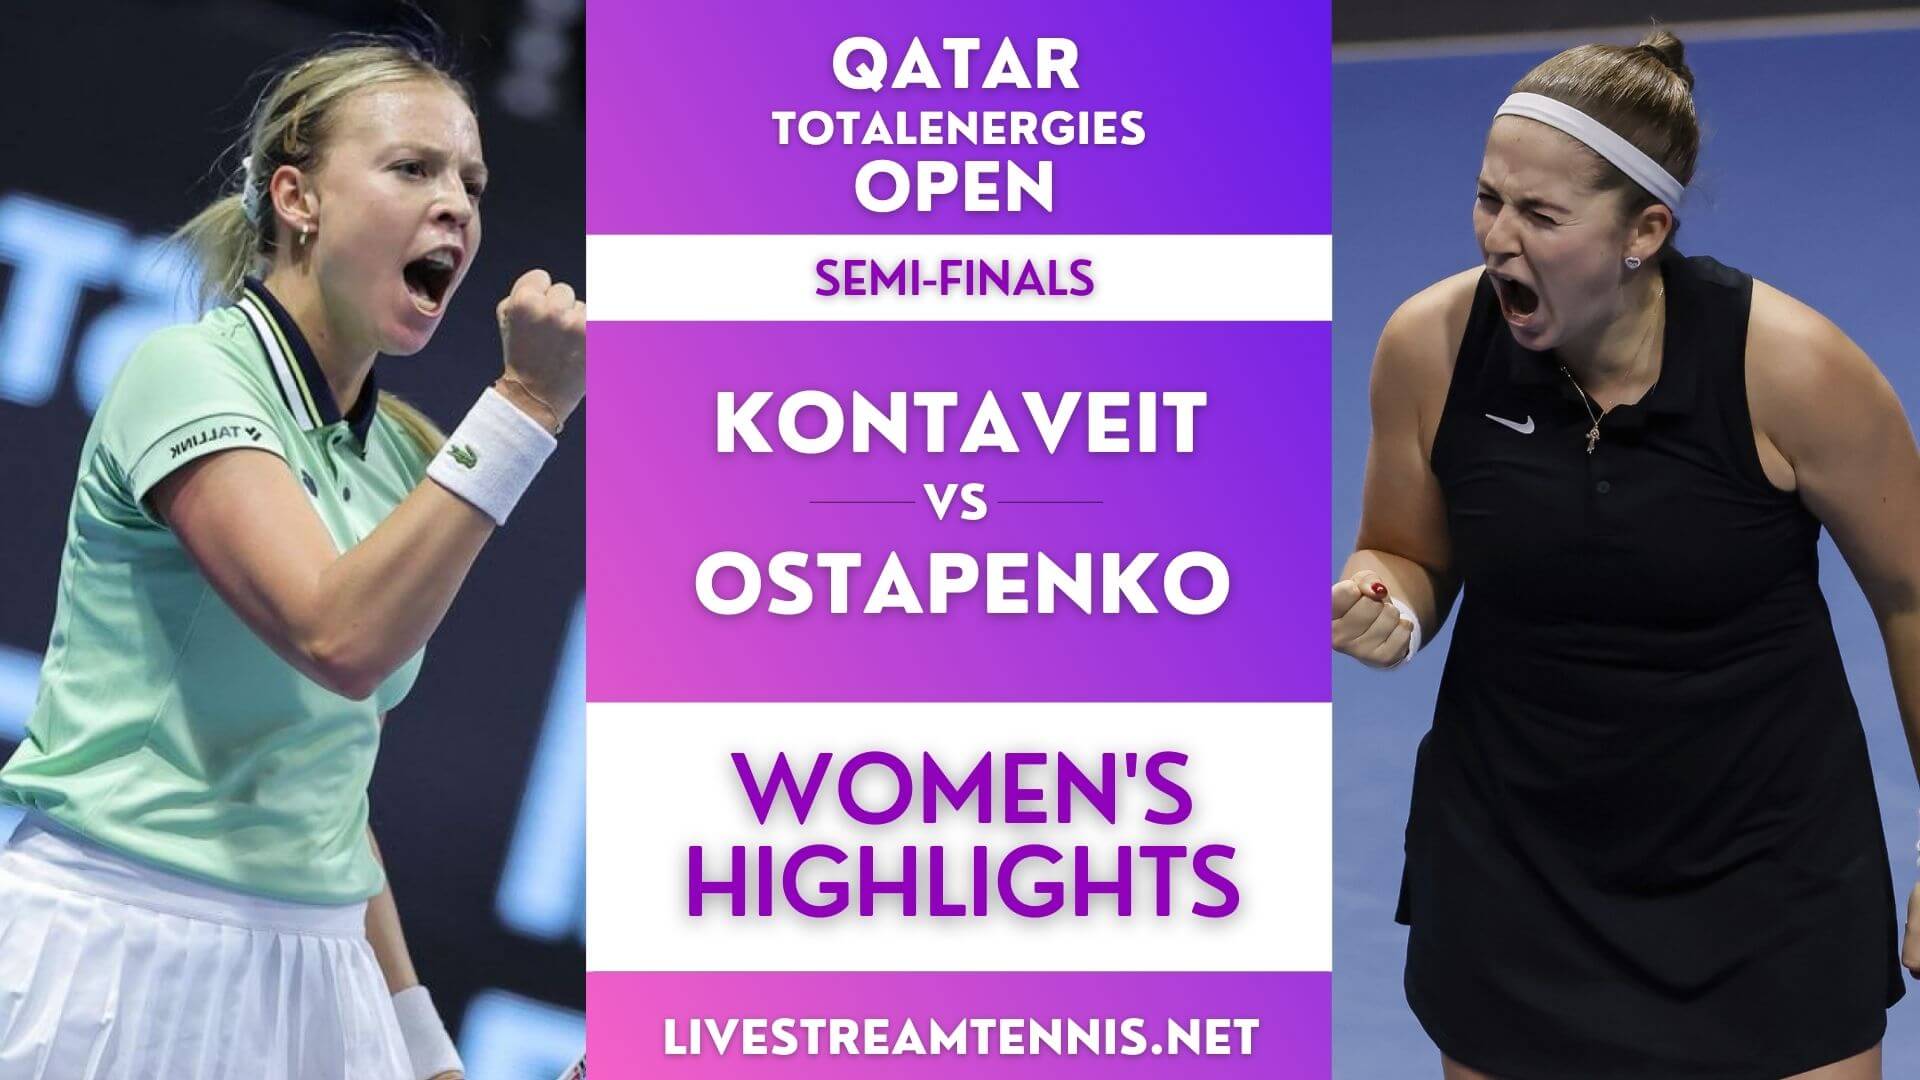 Qatar Open Ladies Semi Final 2 Highlights 2022